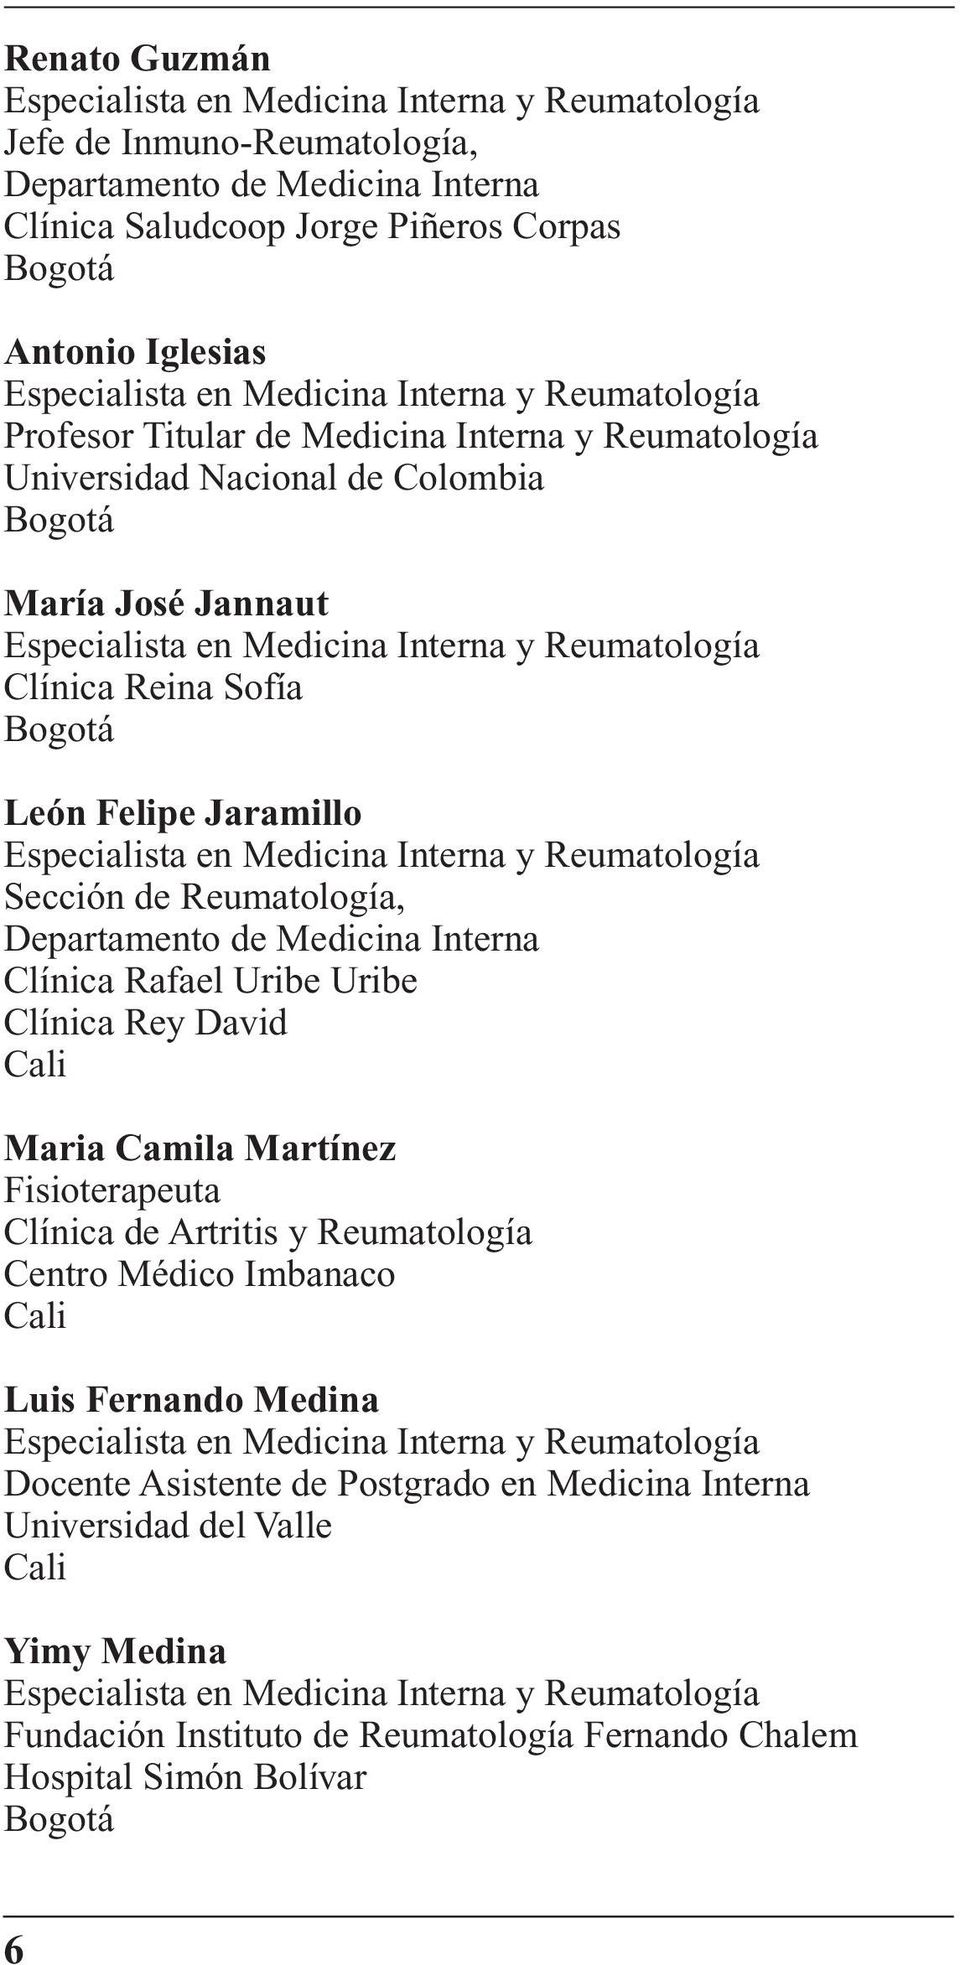 Clínica Reina Sofía Bogotá León Felipe Jaramillo Especialista en Medicina Interna y Reumatología Sección de Reumatología, Departamento de Medicina Interna Clínica Rafael Uribe Uribe Clínica Rey David